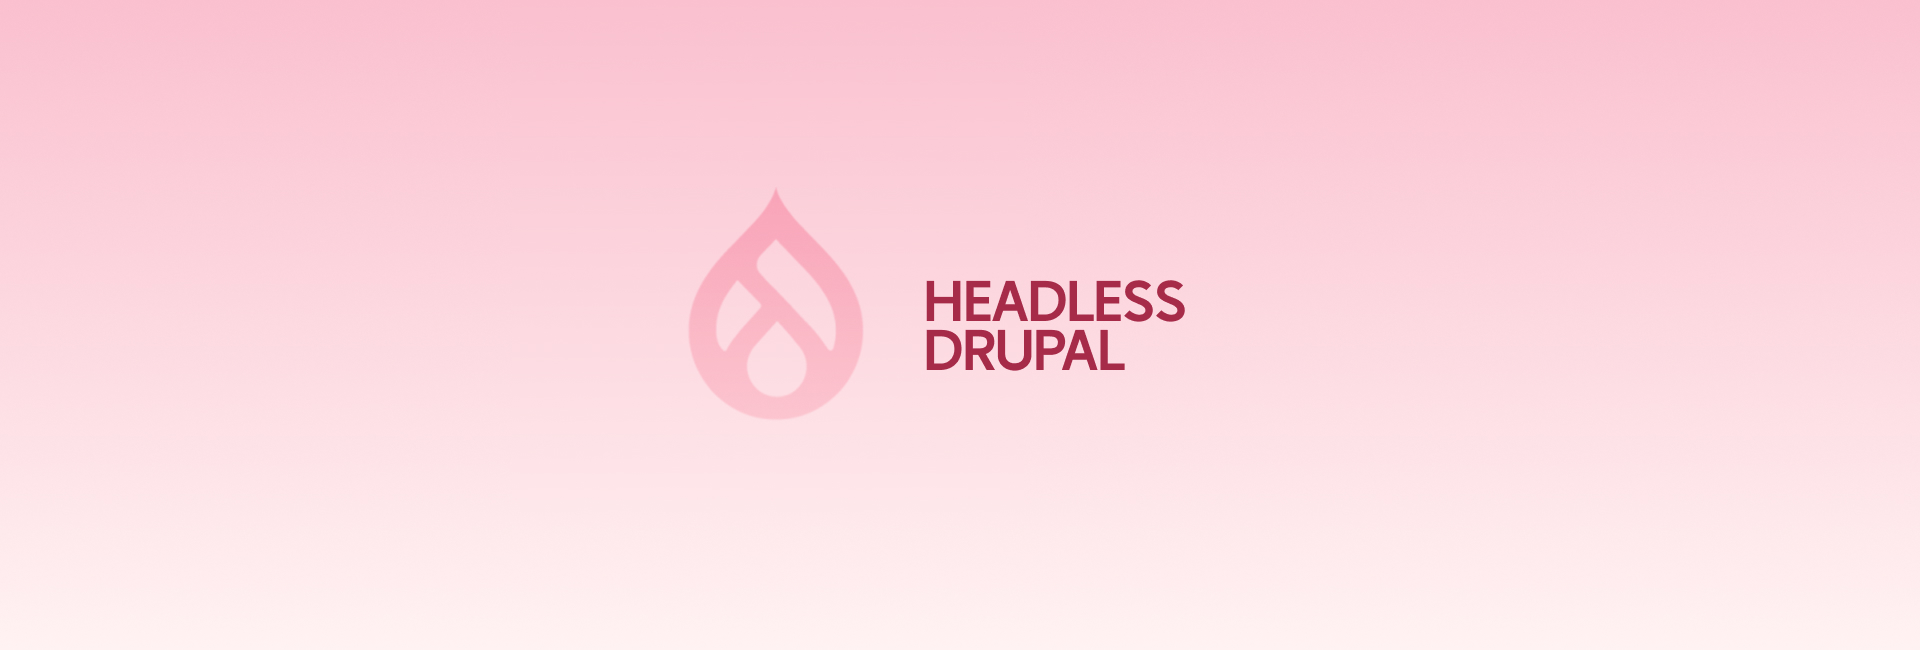 Headless Drupal là gì? Và các ưu nhược của hệ thống headless